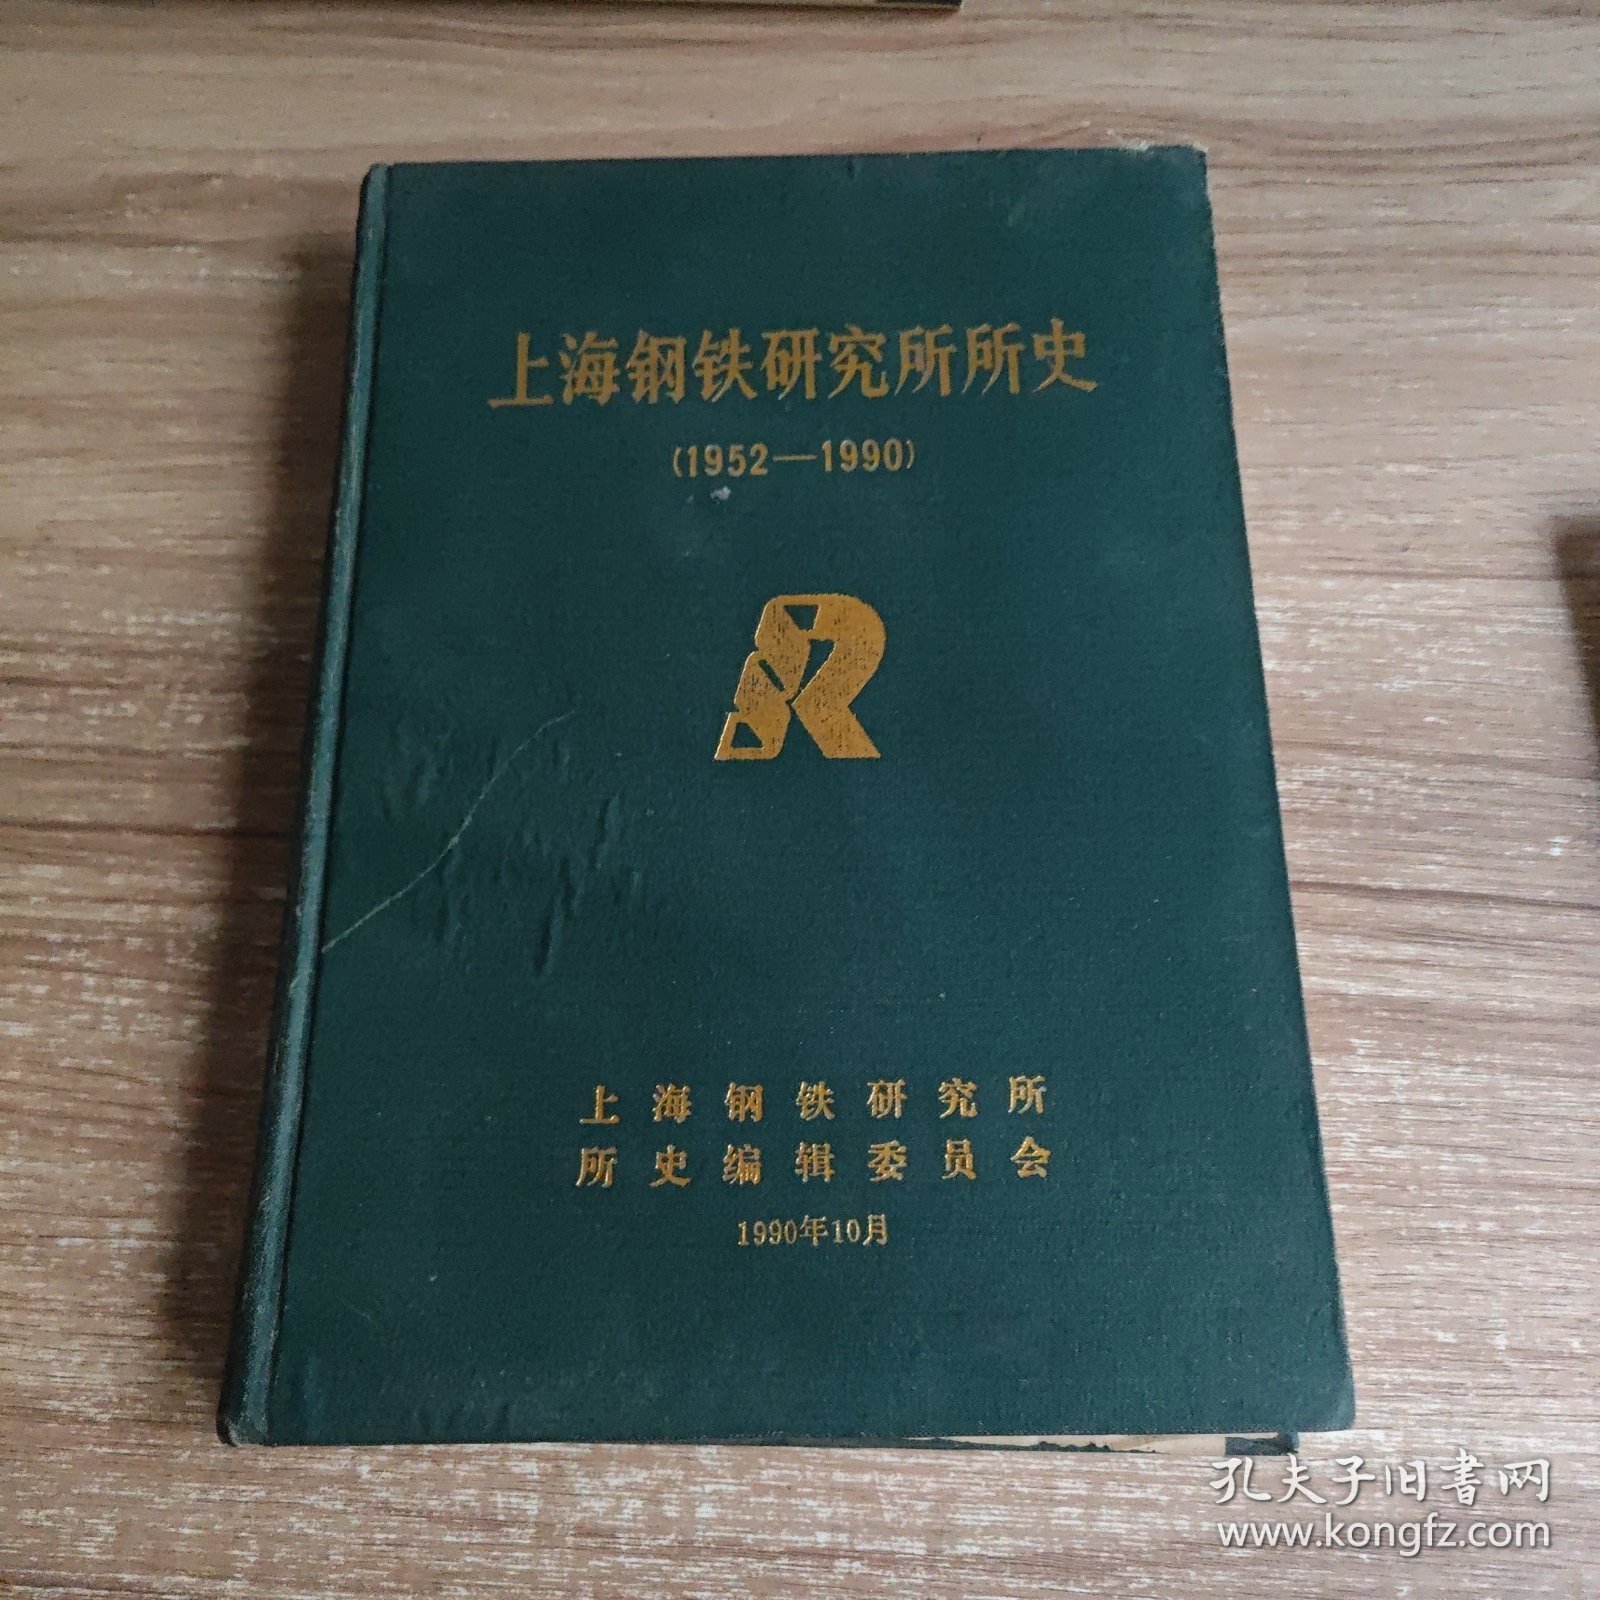 上海钢铁研究所所史(1952-1990)